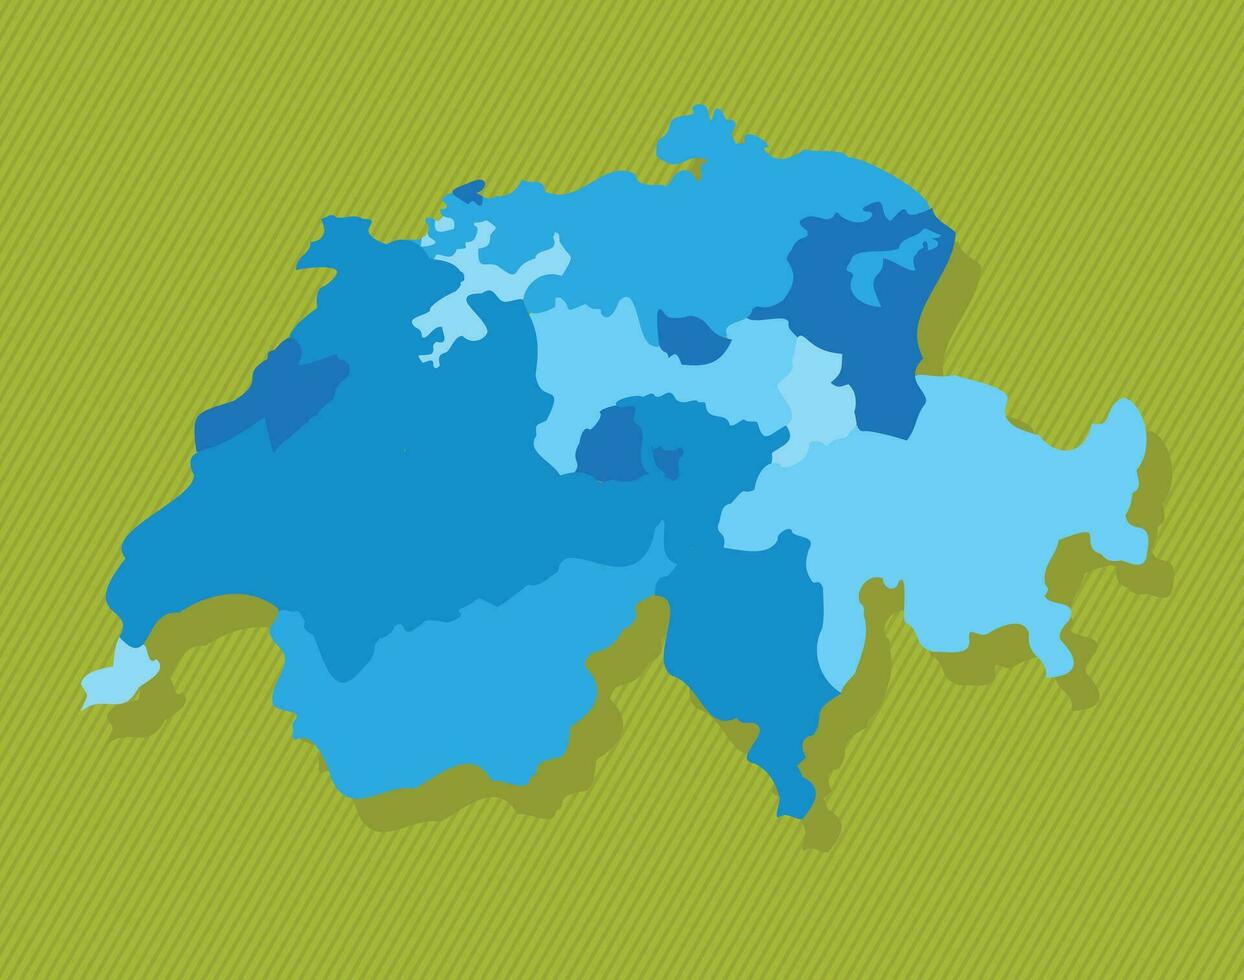 schweiz Karta med regioner blå politisk Karta grön bakgrund vektor illustration